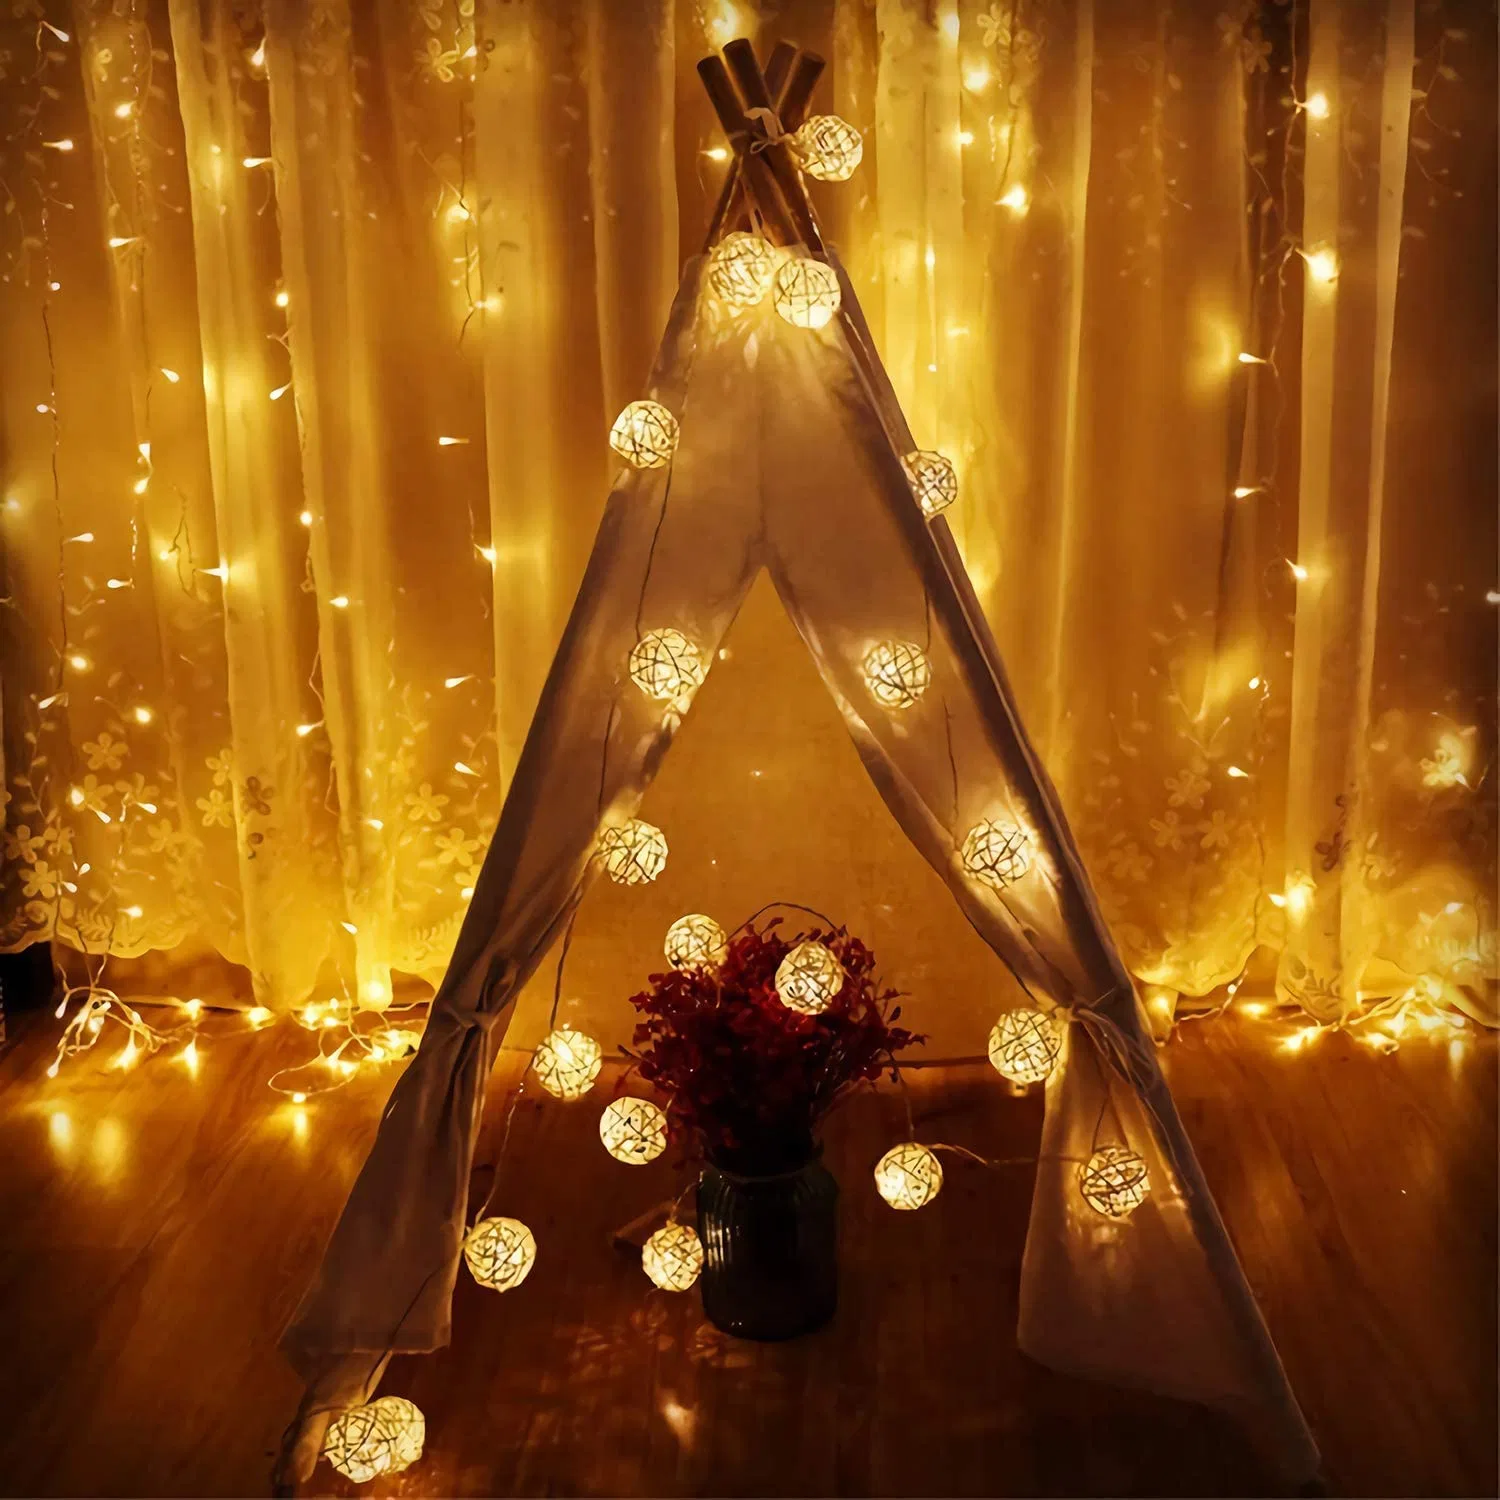 20 LEDs Branco quente LED Fairy String Lights Rattan bolas Garland Corrente Holiday decoração árvore de Natal